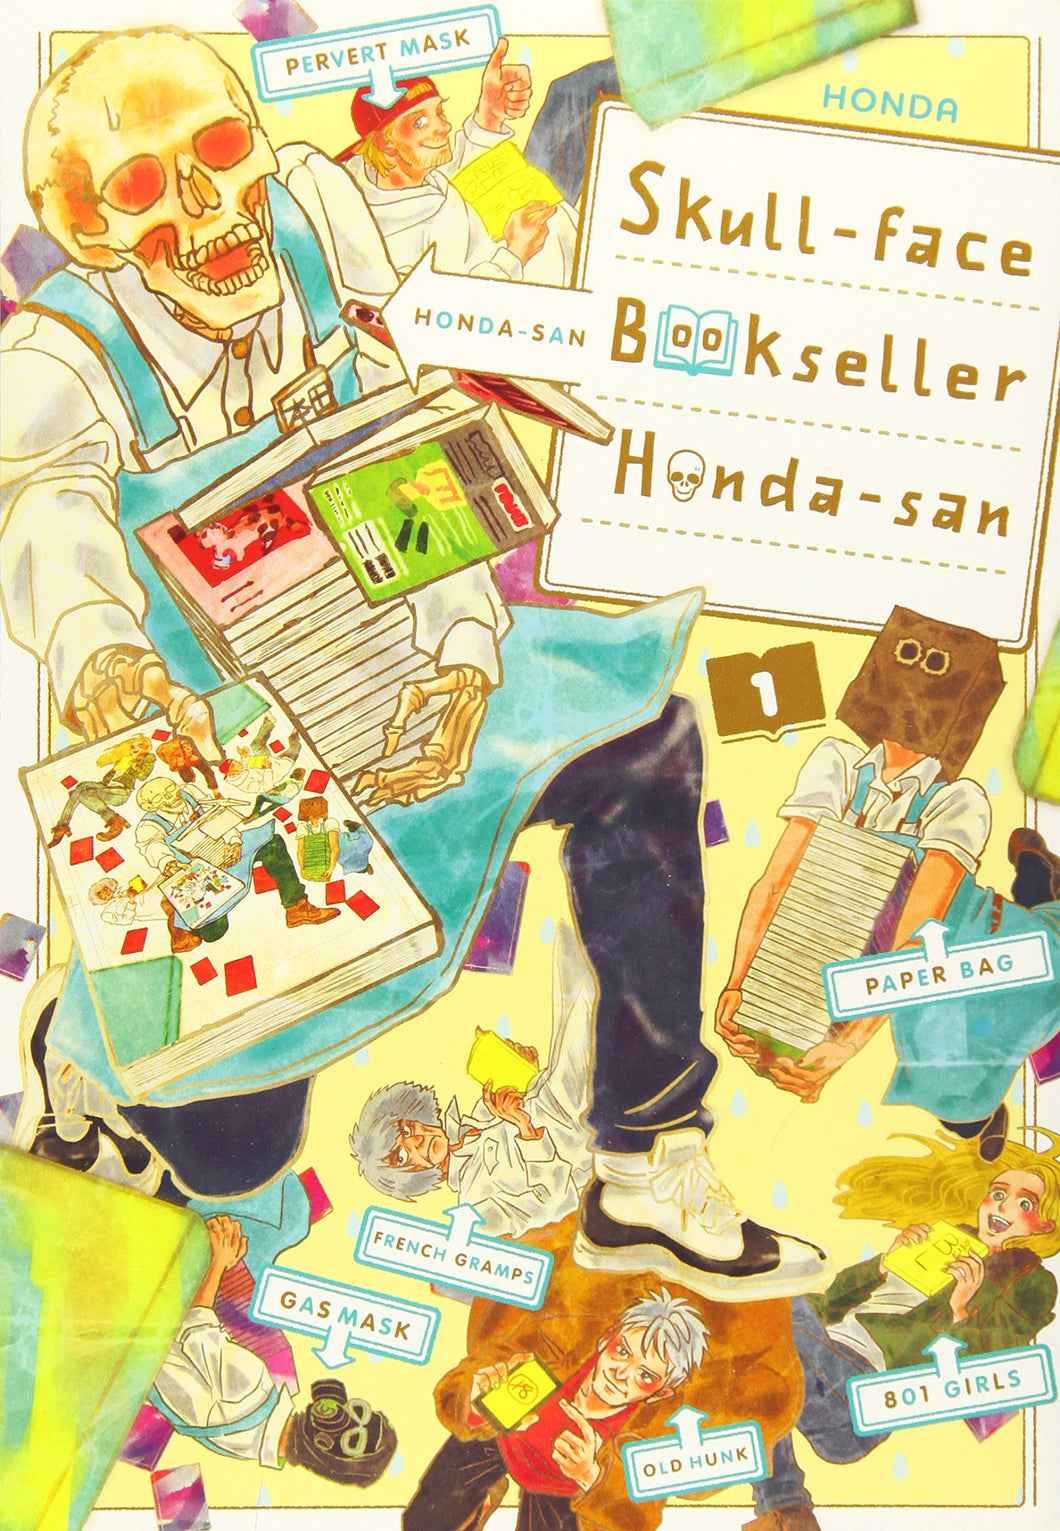 Skull-face Bookseller Honda-san, Vol. 1 by Honda